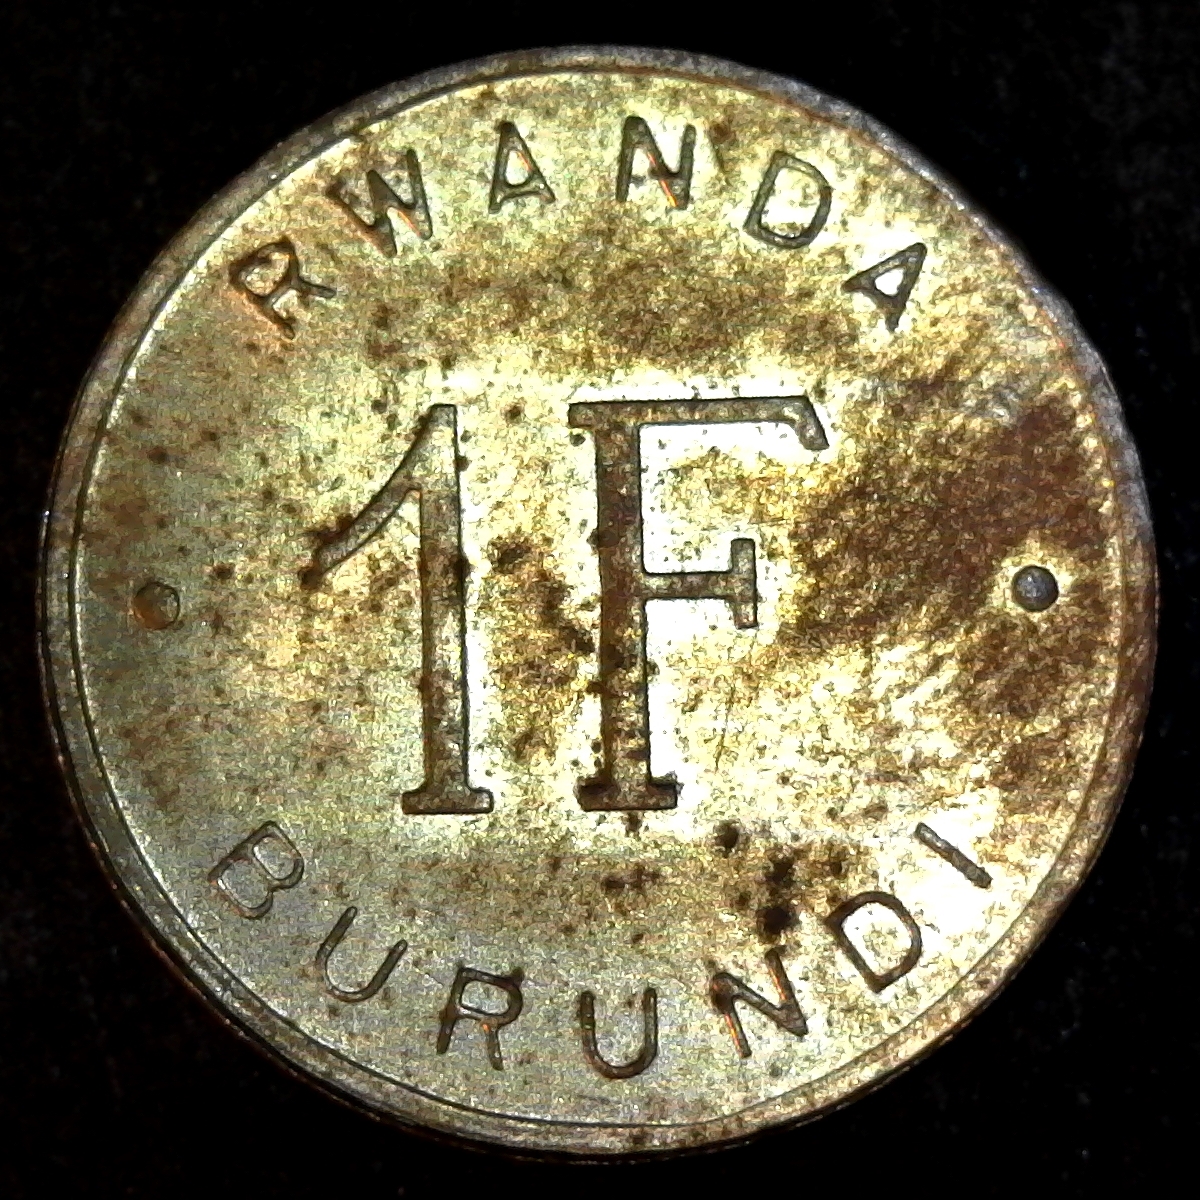 Rwanda Burundi 1961 Franc rev.jpg